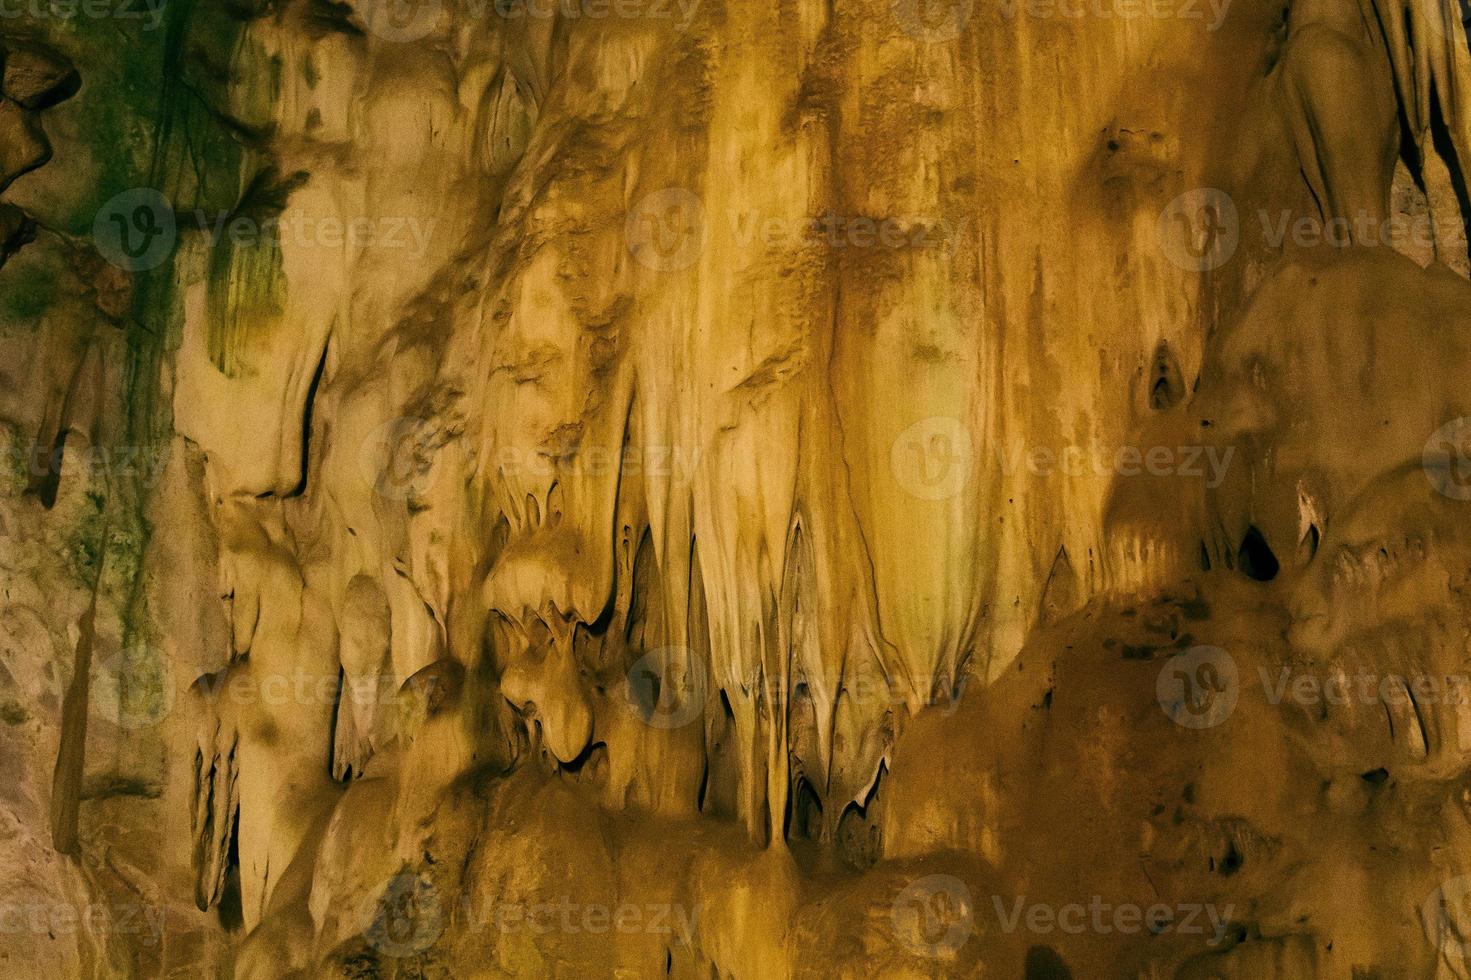 naturale buio metropolitana grotta con stranamente sagomato stalattiti. foto